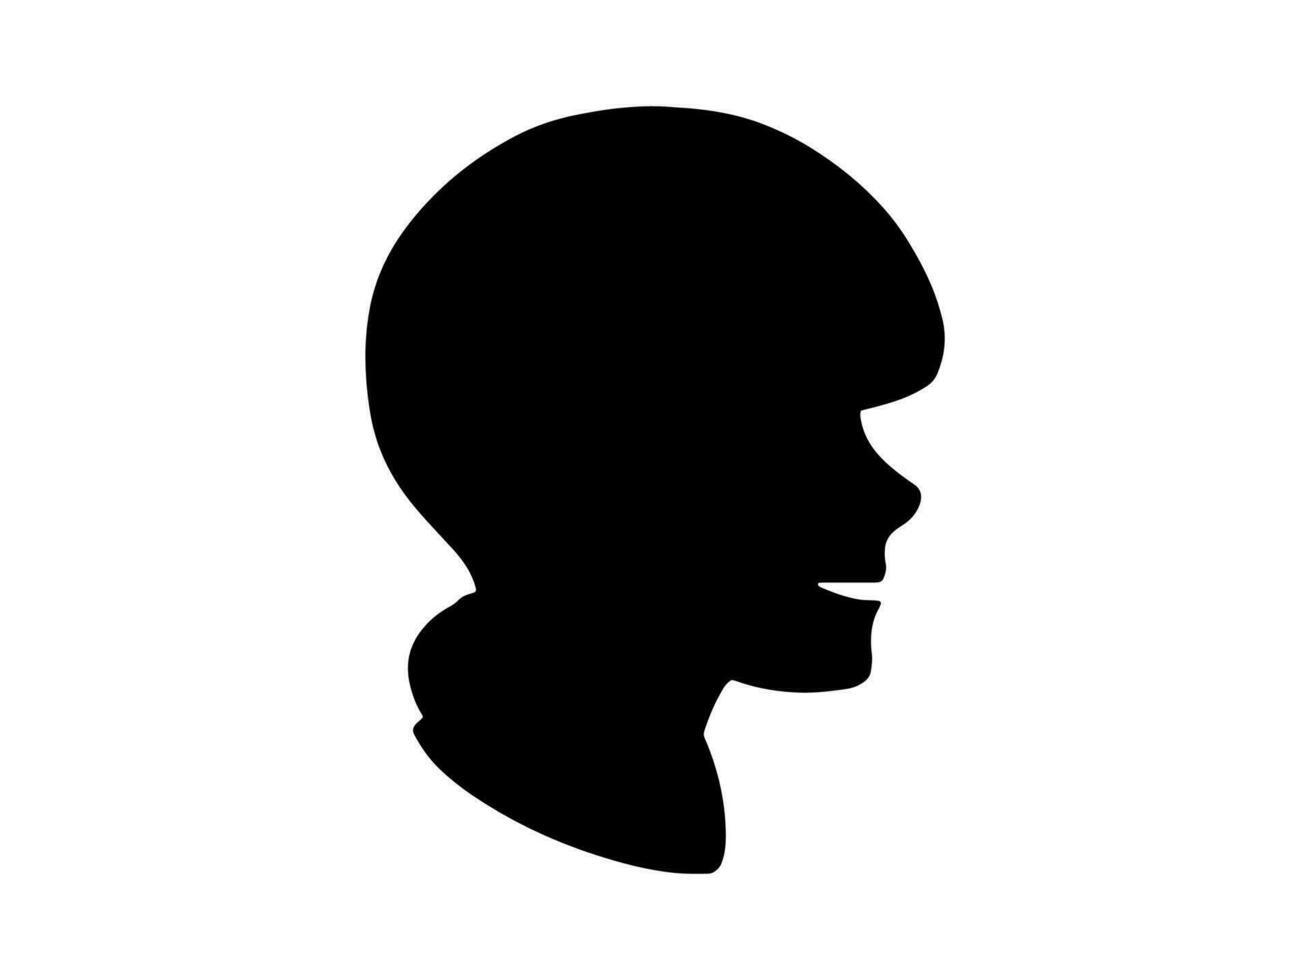 Benutzerbild männlich oder Benutzerbild Mann Silhouette vektor